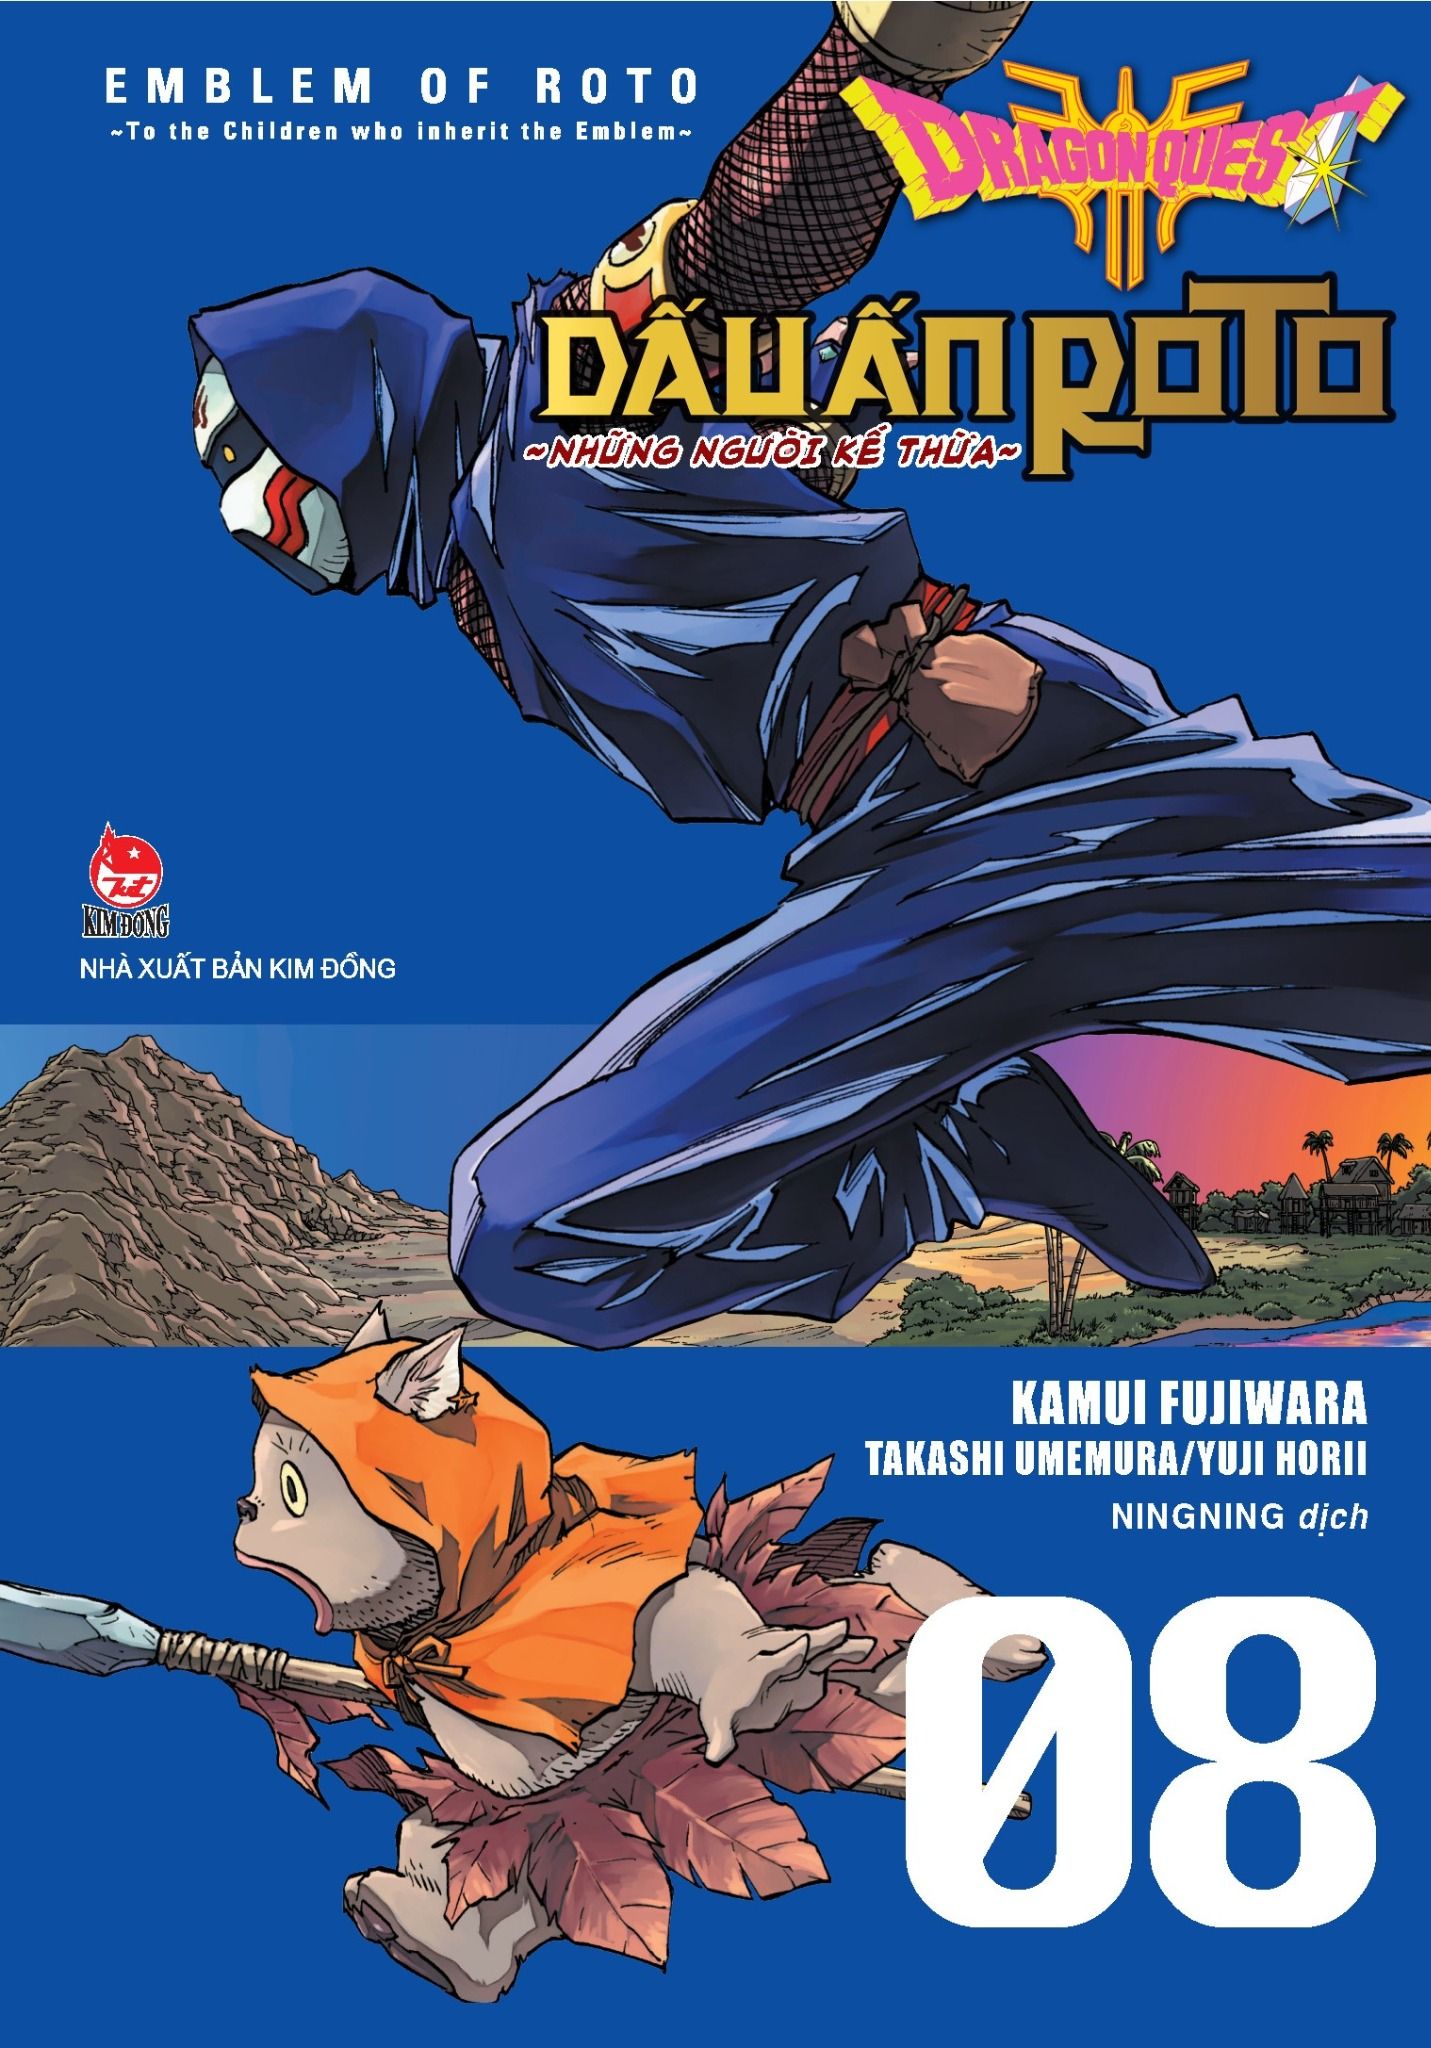  Dragon Quest - Dấu ấn Roto (Dragon Quest Saga Emblem of Roto) - Tập 8 